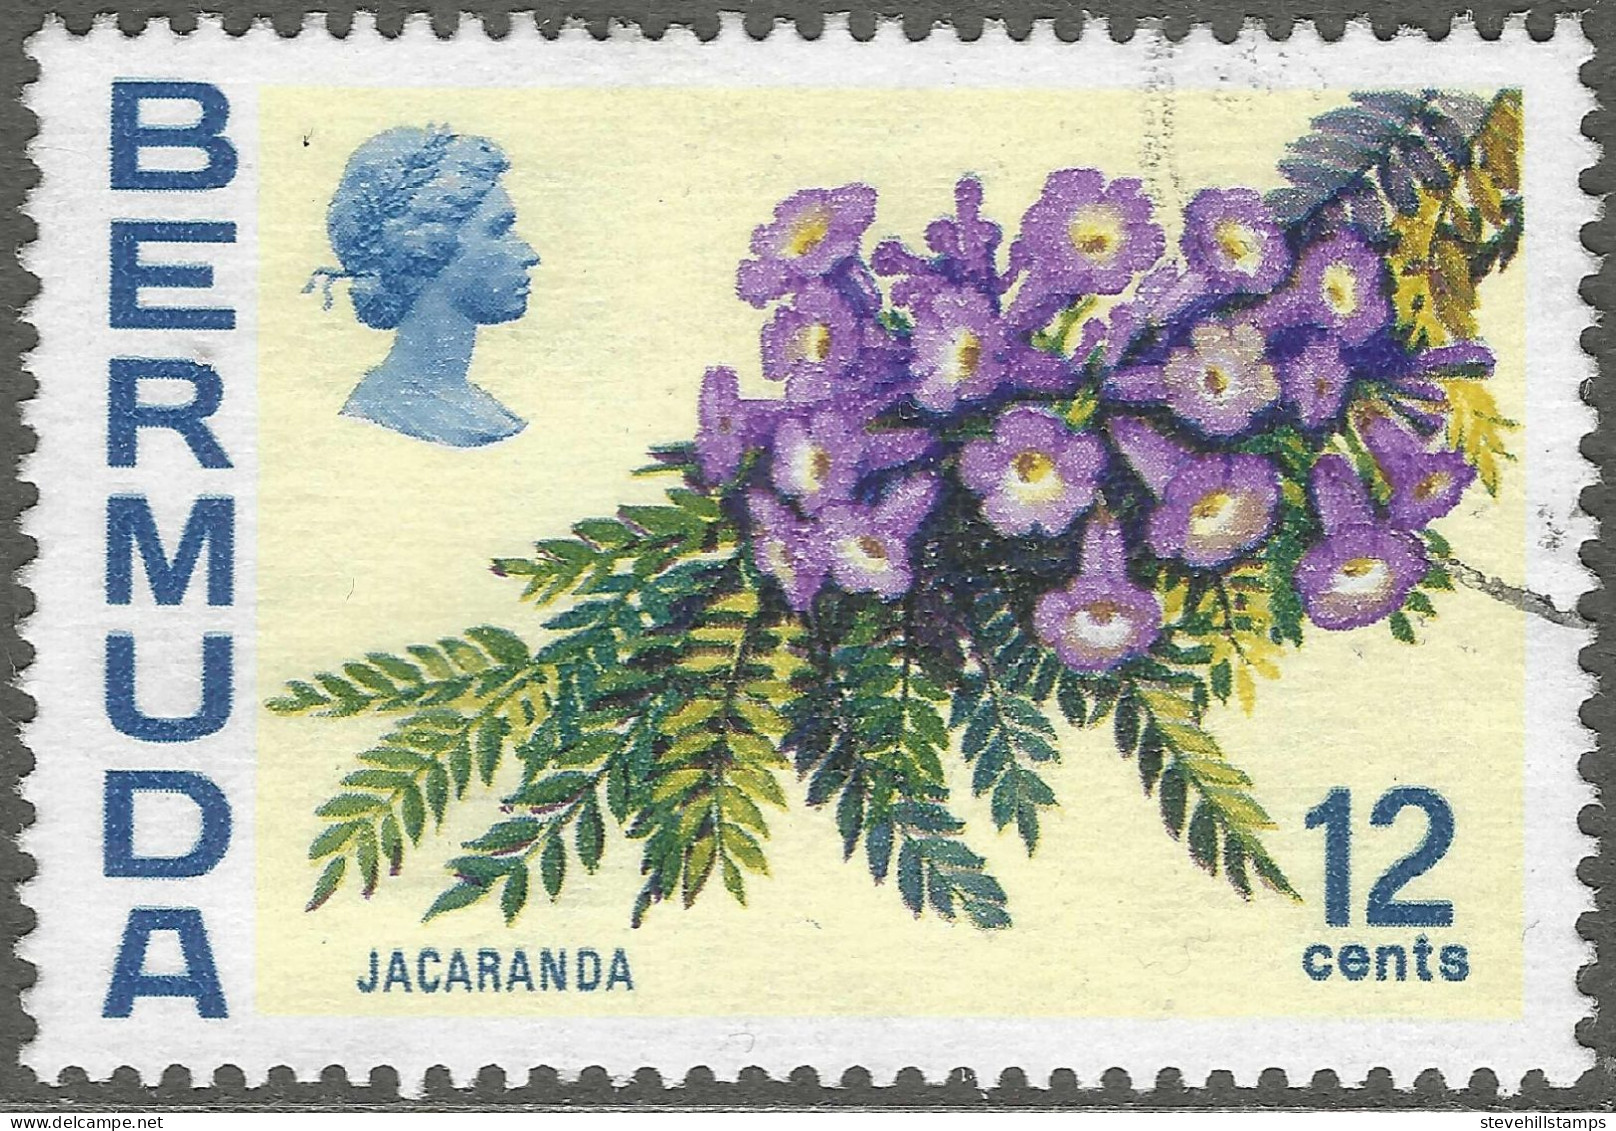 Bermuda. 1970 Flowers, 12c Used. SG 257 - Bermuda